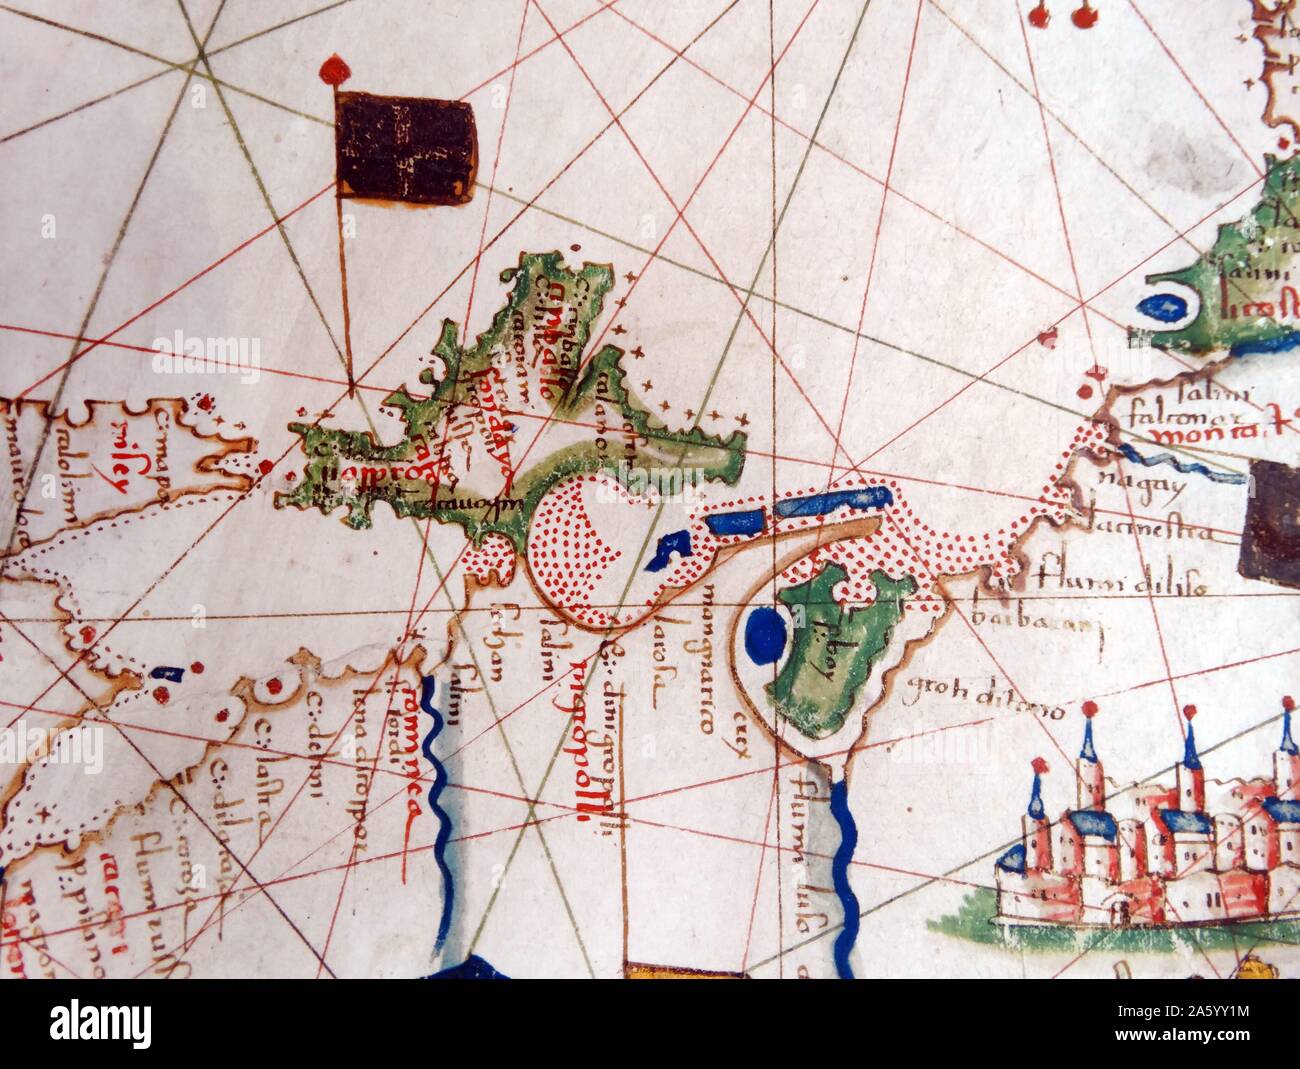 Carte de l'Europe de la Renaissance, Jacopo Russo, 1528, détail d'Afrique du Nord Banque D'Images